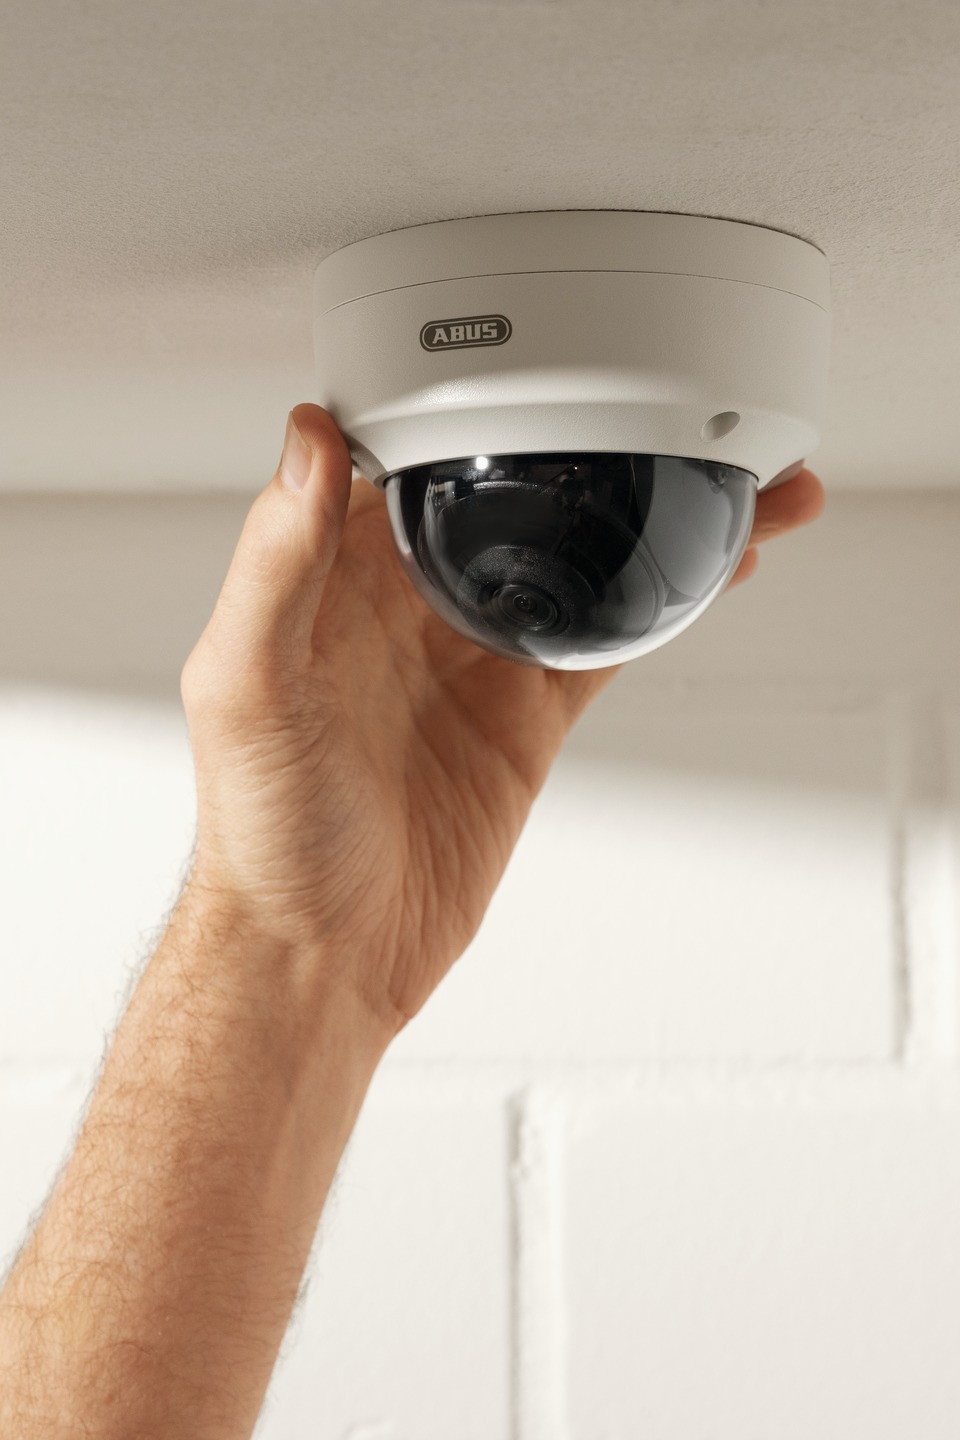 ABUS IP Videoüberwachung 4MPx Mini Dome-Kamera